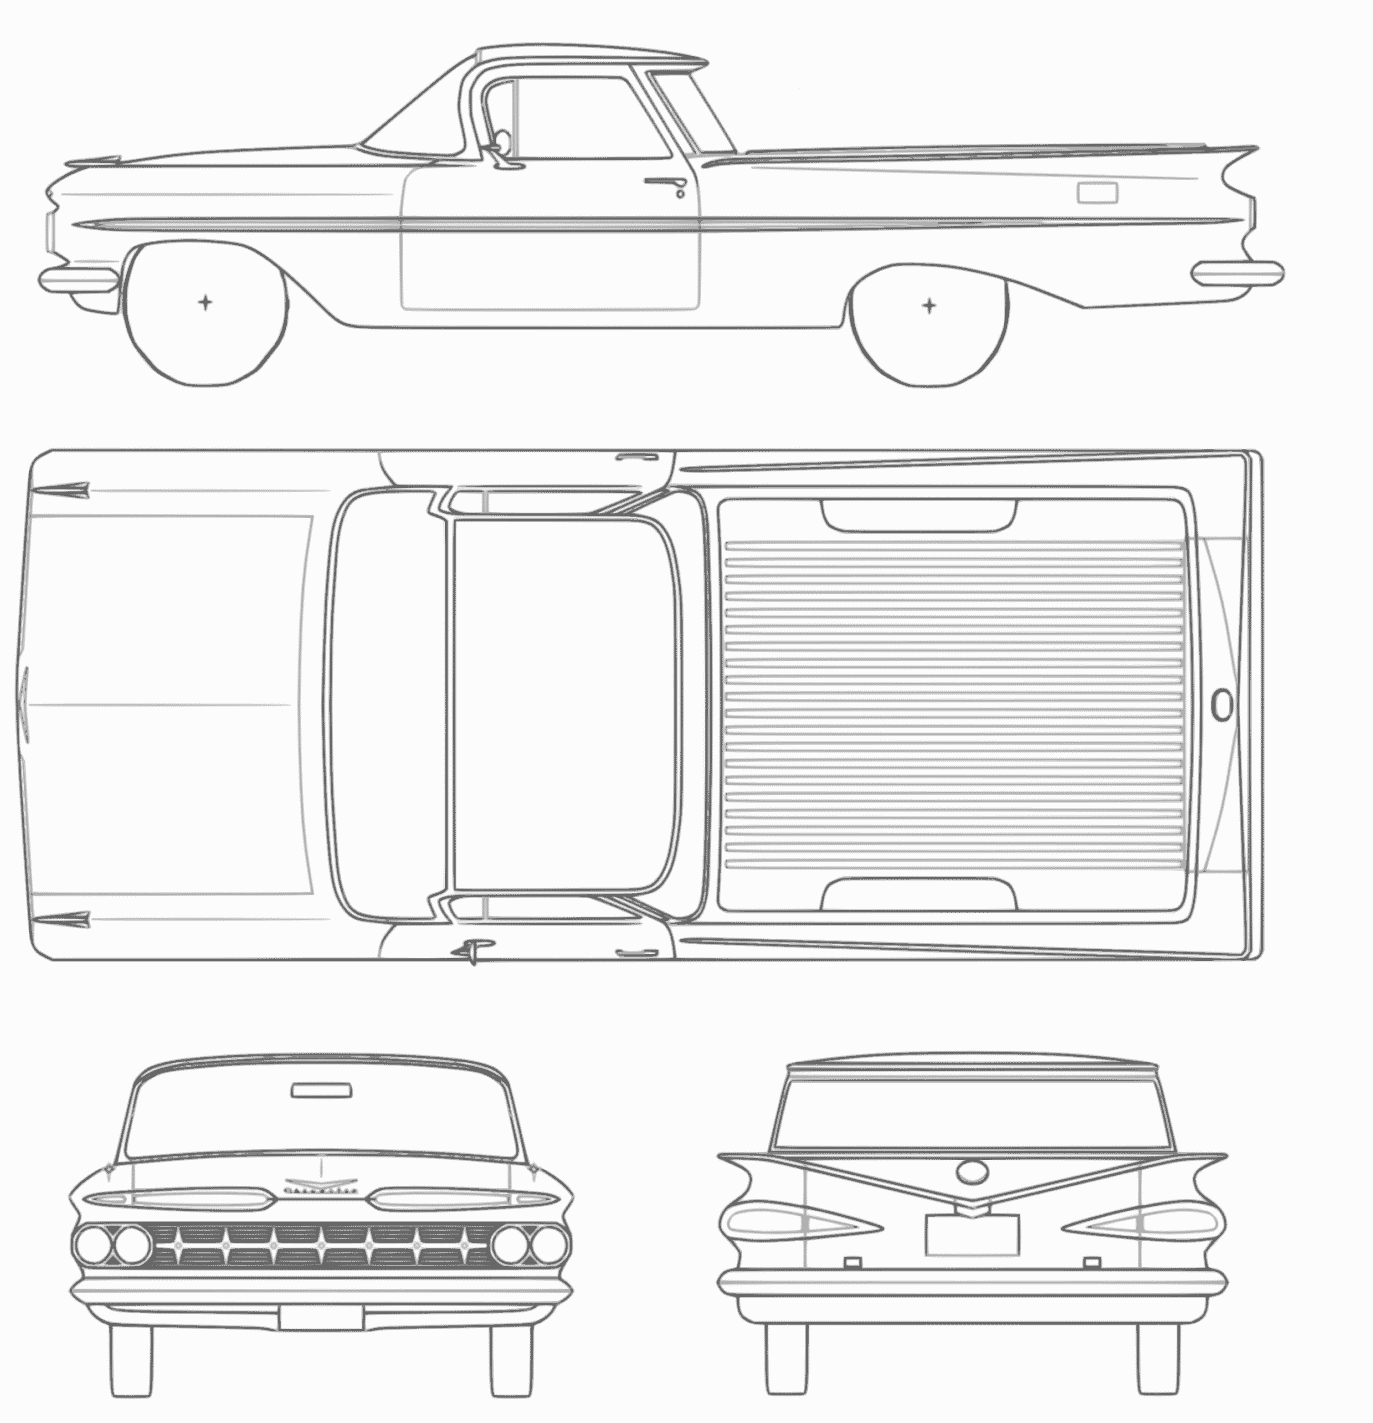 Chevrolet El Camino blueprint